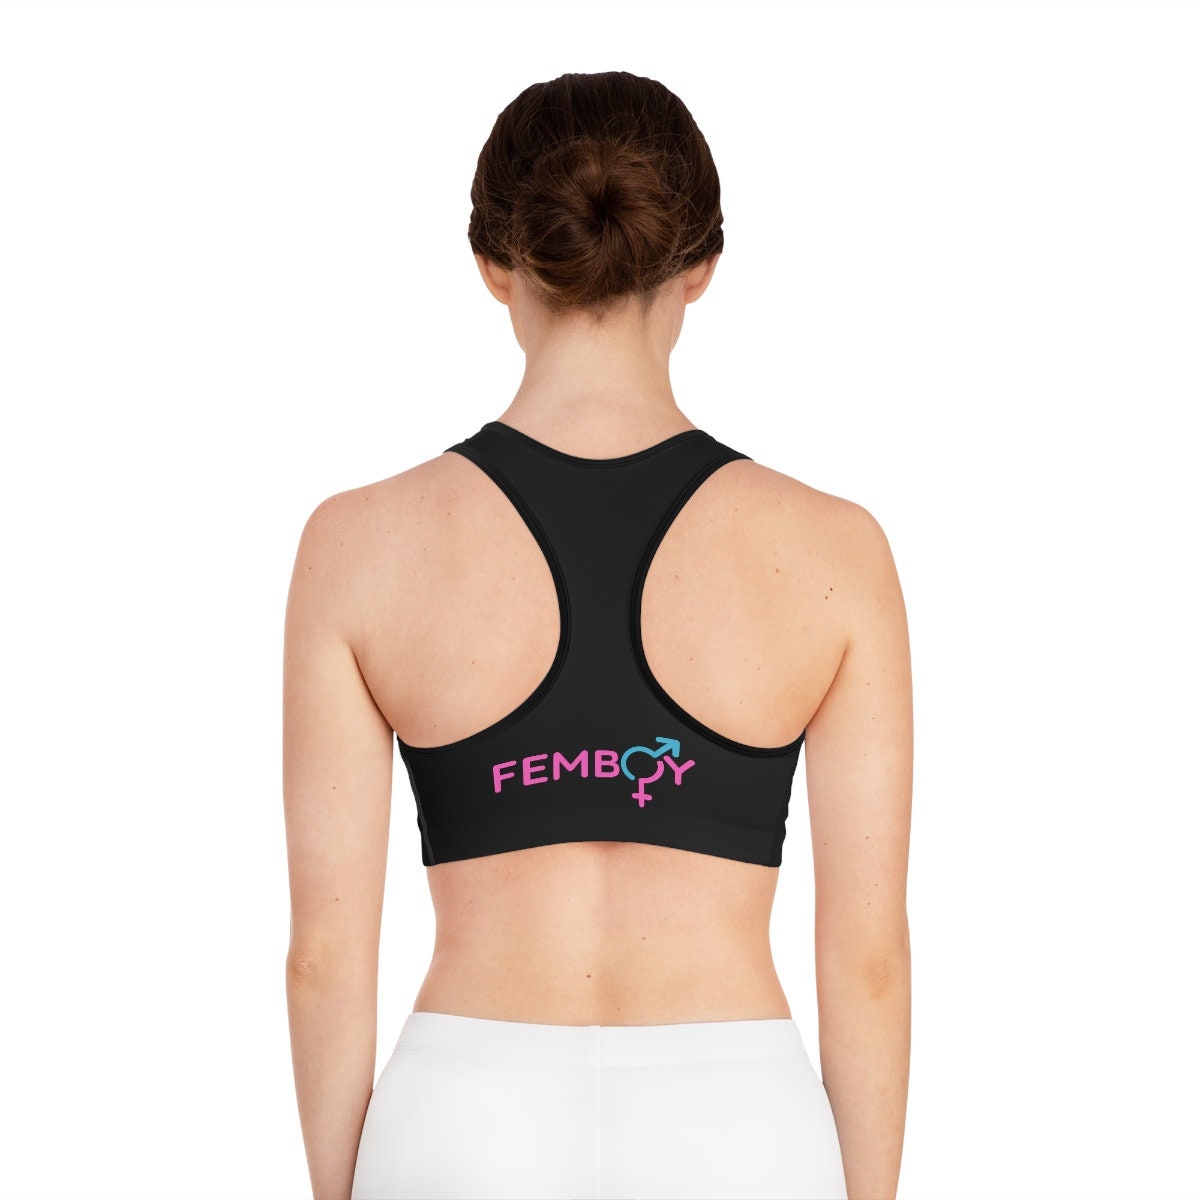 Maddison on X: More workout stuff. Blue shorts and padded pink sports bra.  #MtF #Femboy #Workout  / X